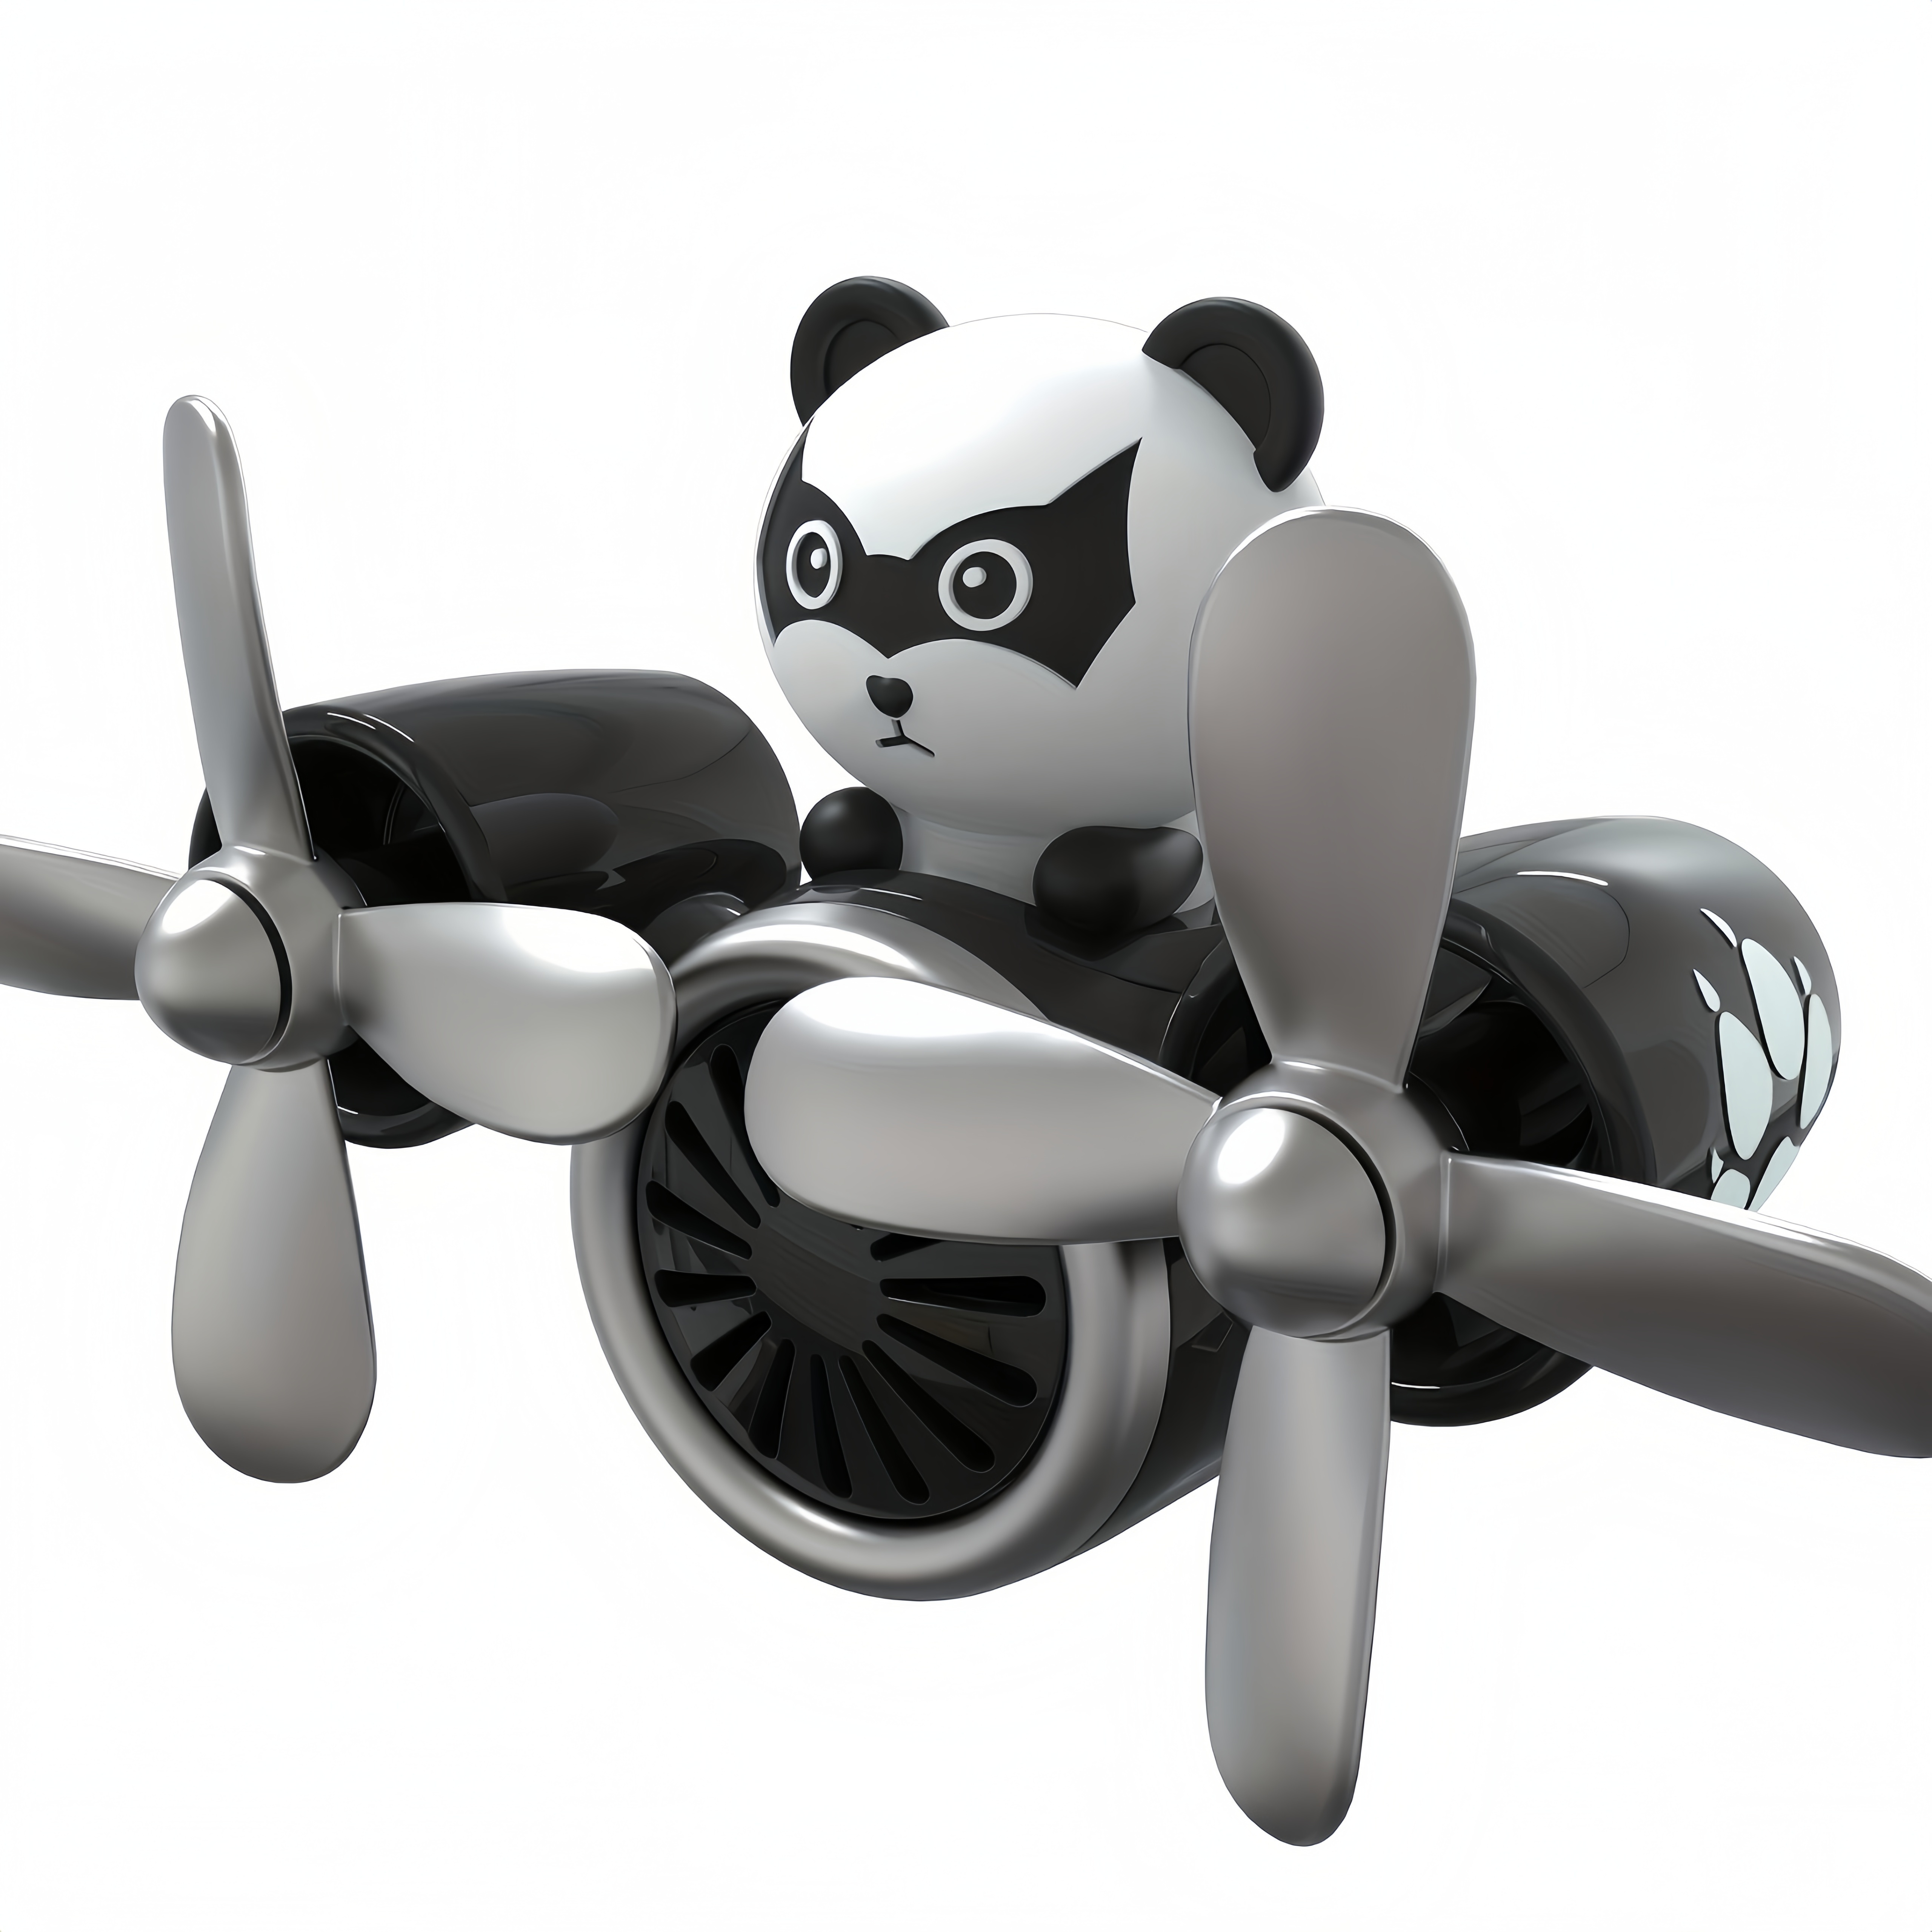 Panda Autozubehör - Kostenlose Rückgabe Innerhalb Von 90 Tagen - Temu  Switzerland